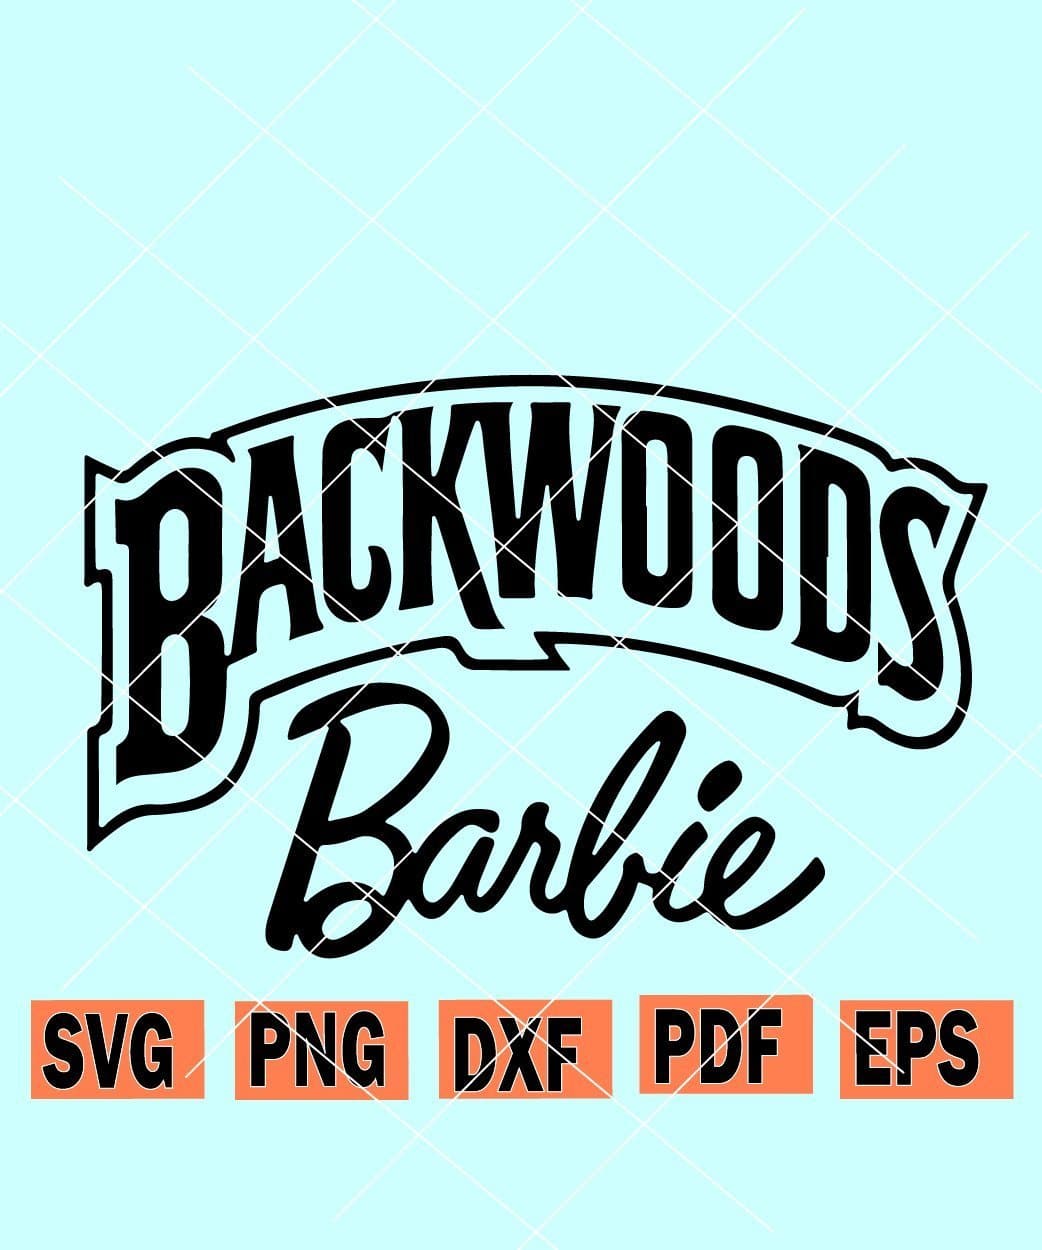 Download Backwoods Barbie Svg Backwoods Barbie Rolling Tray Svg Backwoods Svg Backwoods Shirt Svg Svg Hubs